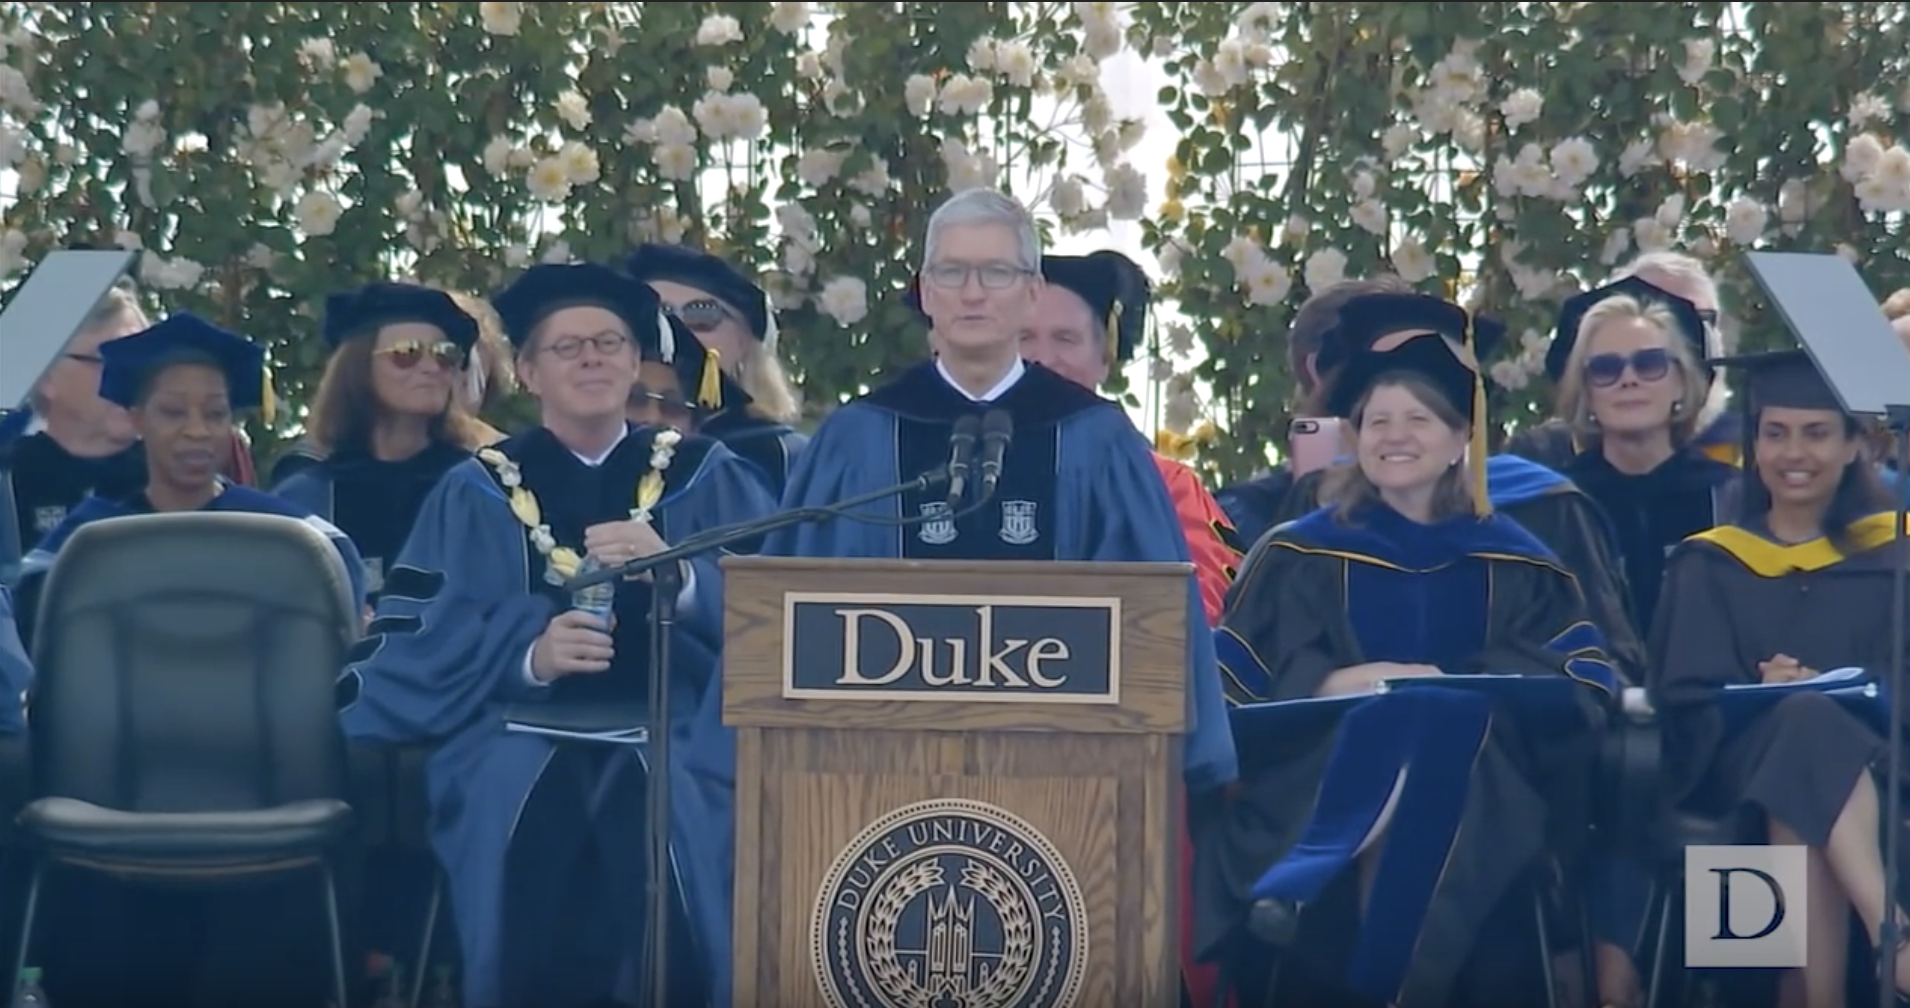 Il discorso di Tim Cook alla Duke University: “Siate senza paura”